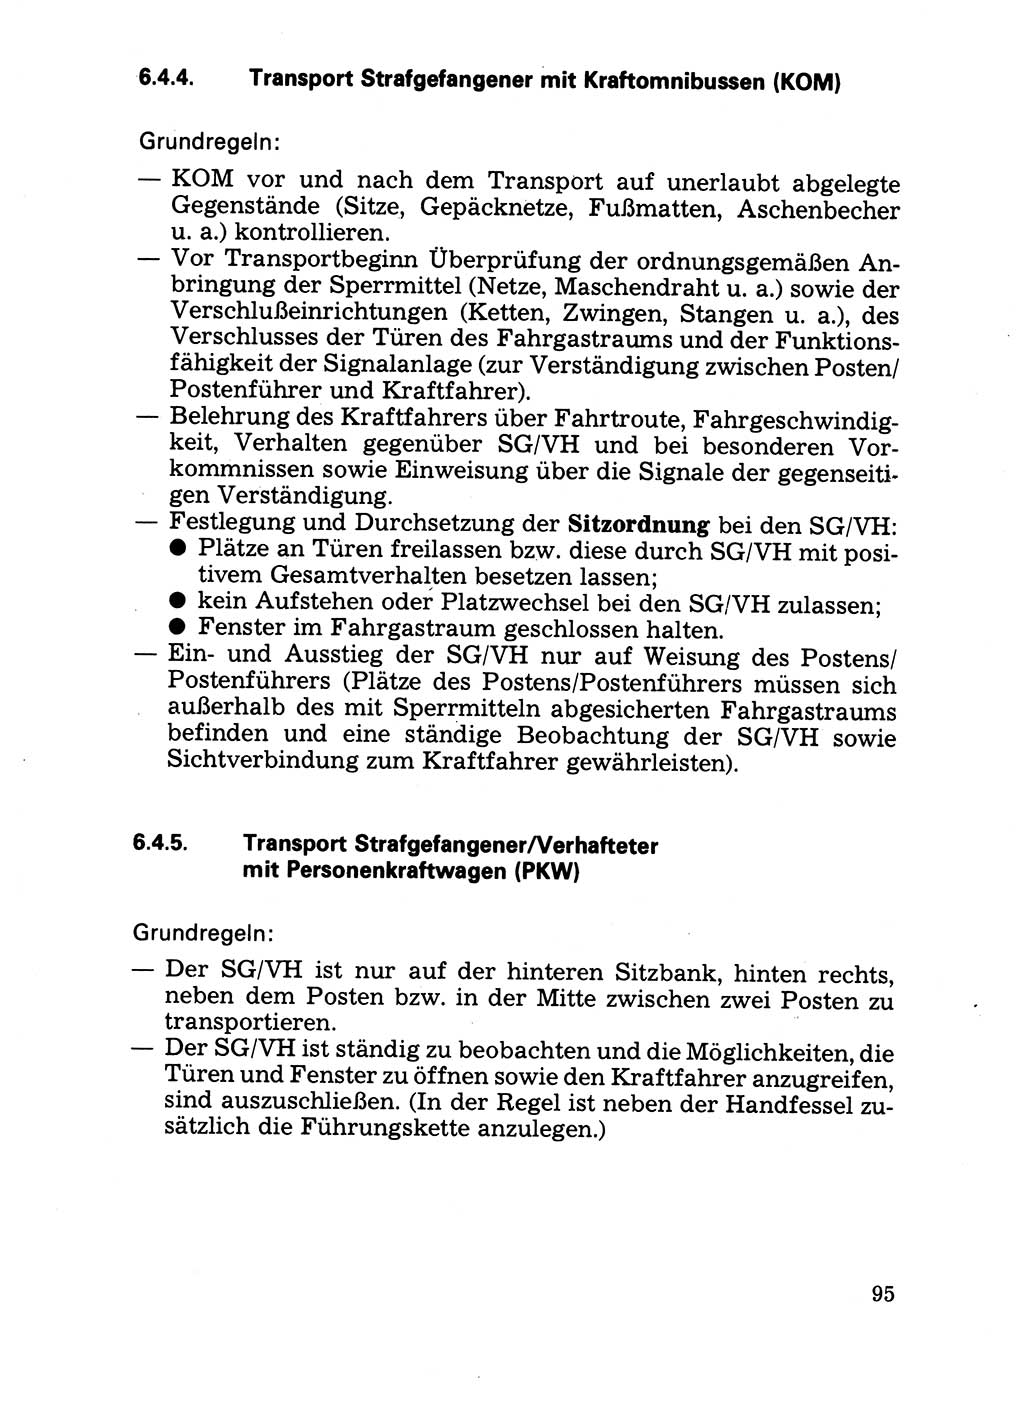 Handbuch für operative Dienste, Abteilung Strafvollzug (SV) [Ministerium des Innern (MdI) Deutsche Demokratische Republik (DDR)] 1981, Seite 95 (Hb. op. D. Abt. SV MdI DDR 1981, S. 95)